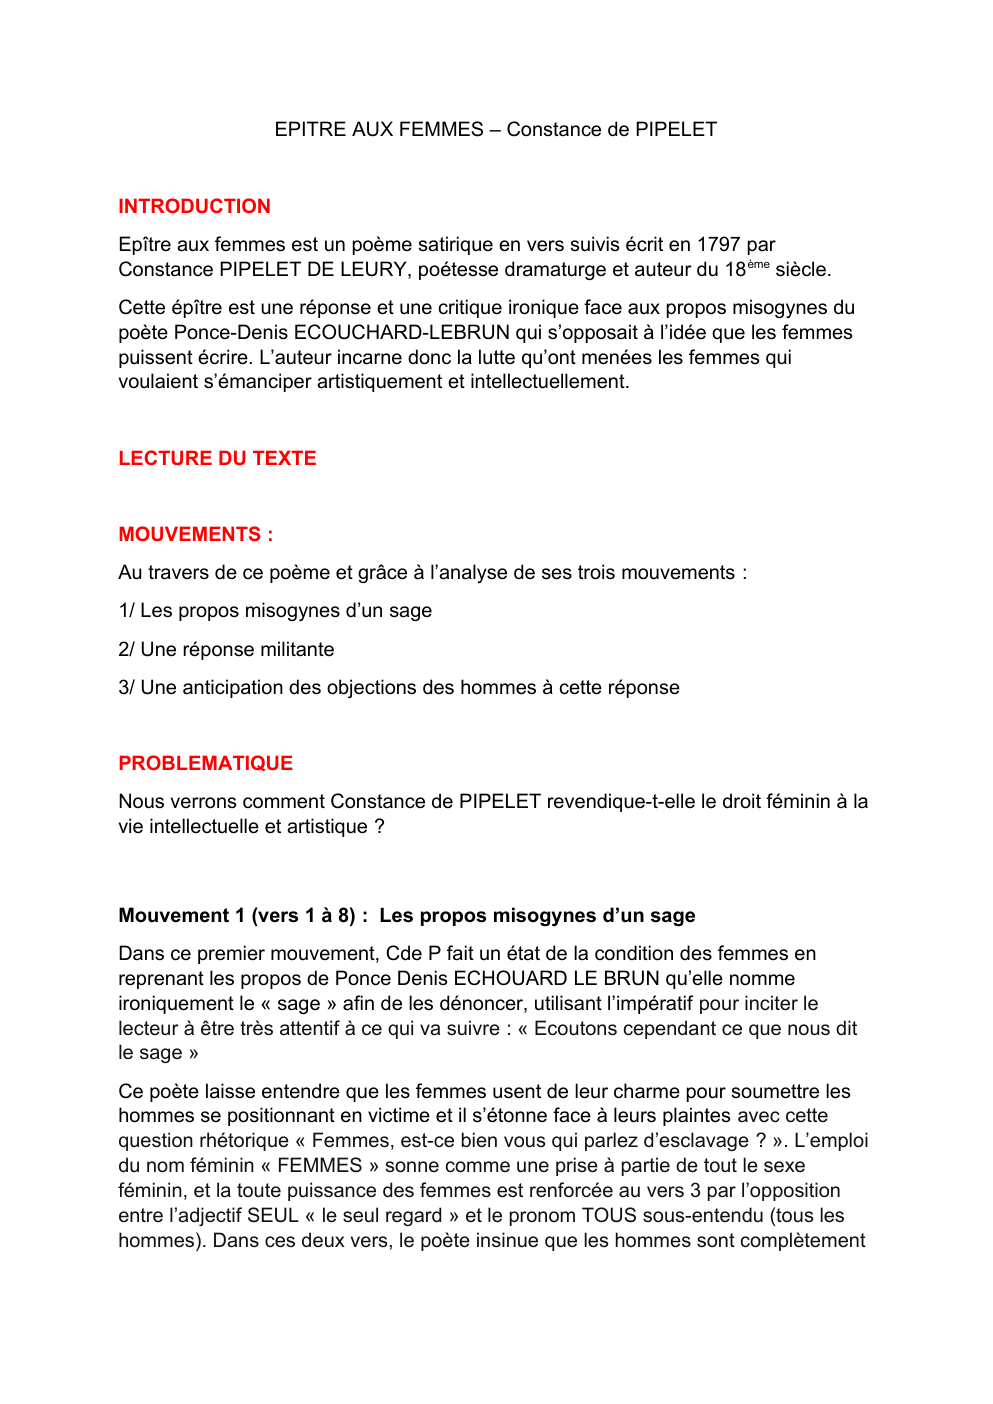 Prévisualisation du document EPITRE AUX FEMMES CONSTANCE DE PIPELET